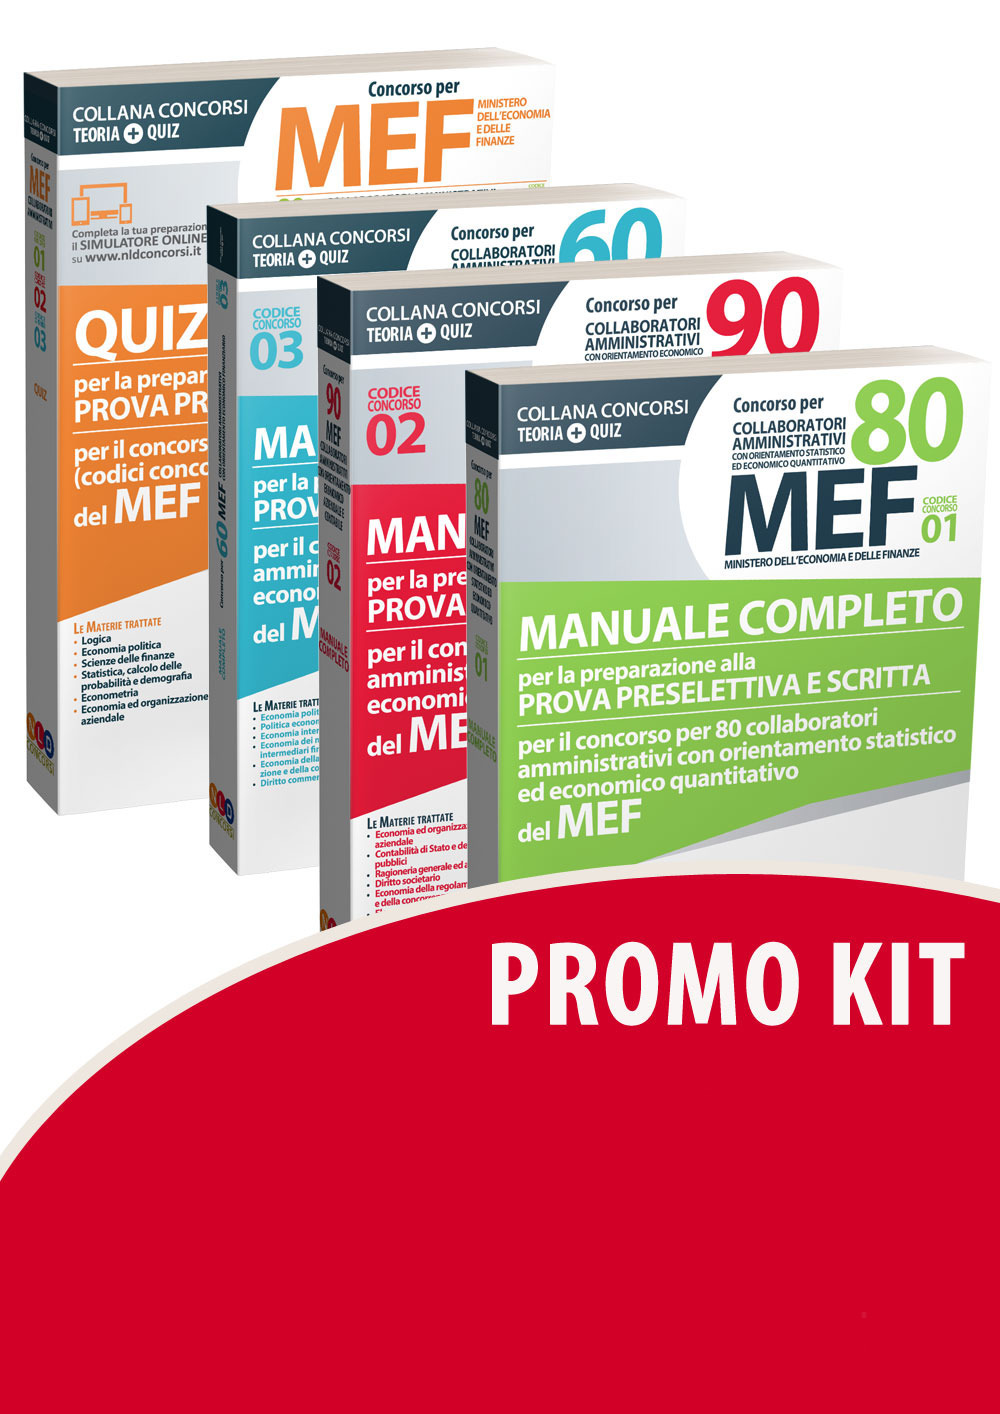 Image of Concorso per 60-80-90 collaboratori MEF. Manuale completo per la preparazione alla prova preselettiva e scritta per il concorso (codici concorso 01, 02, 03) del MEF-Quiz